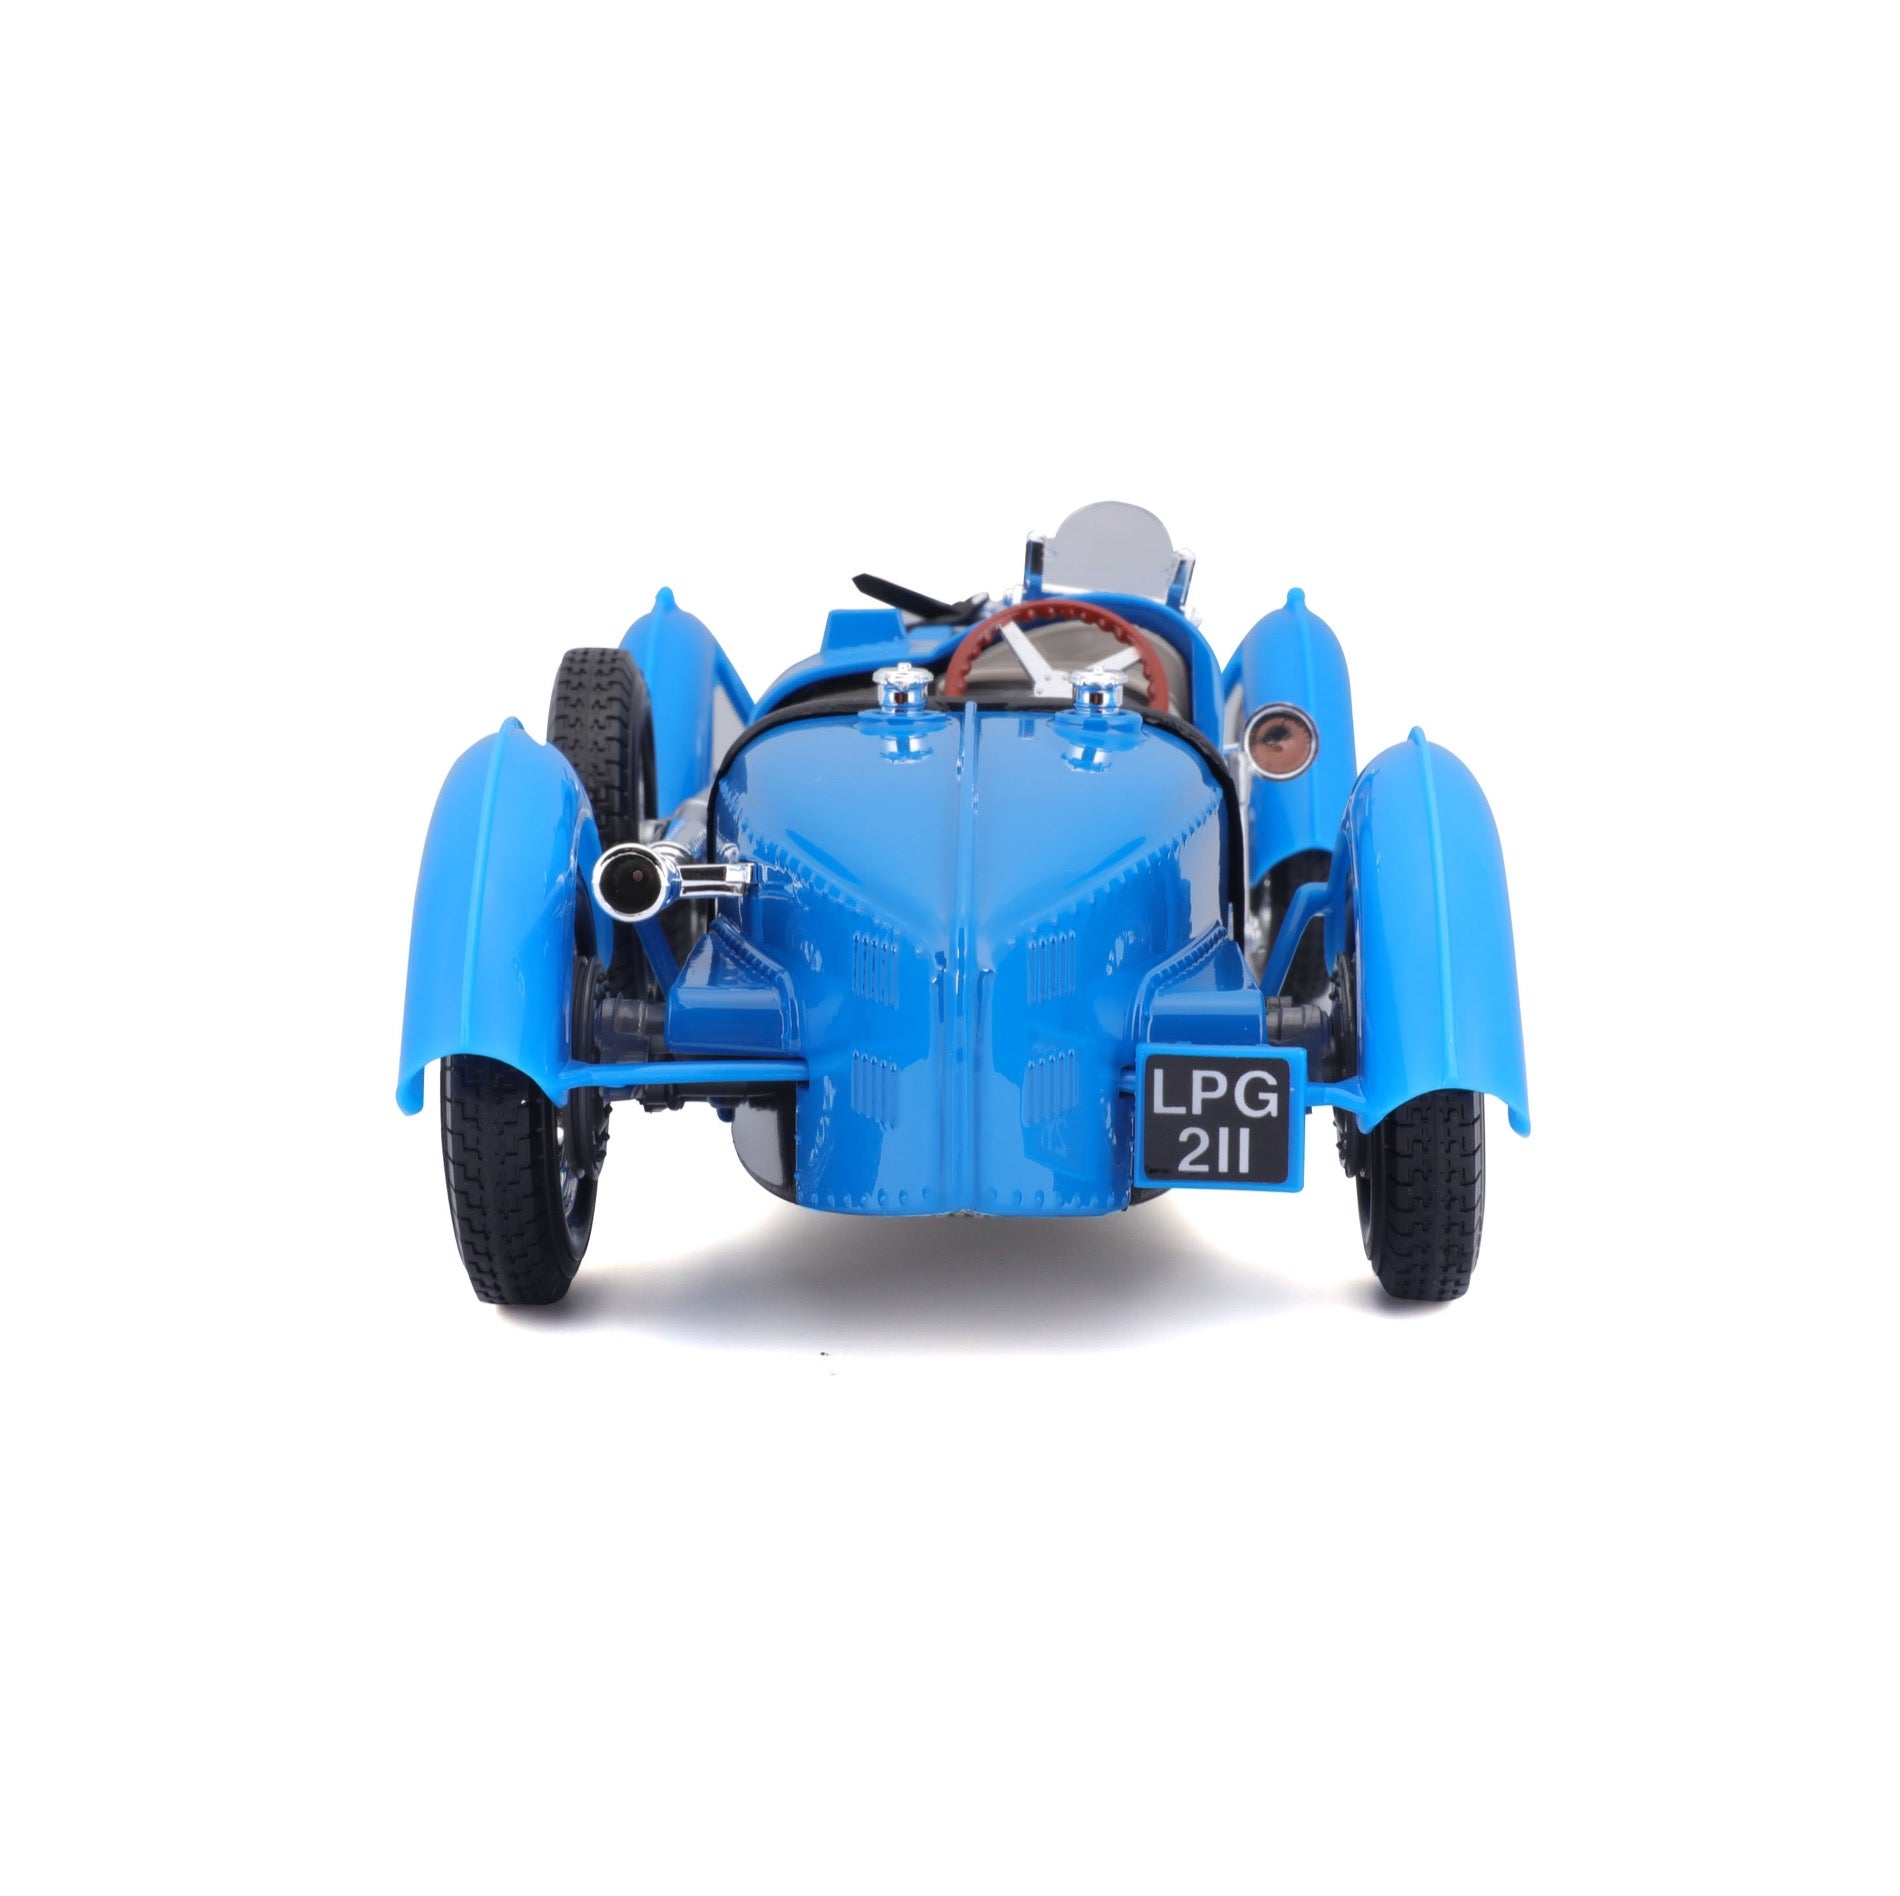 18-12062 Bburago - Bugatti TYPE 59 Blue - 1:18 - blue